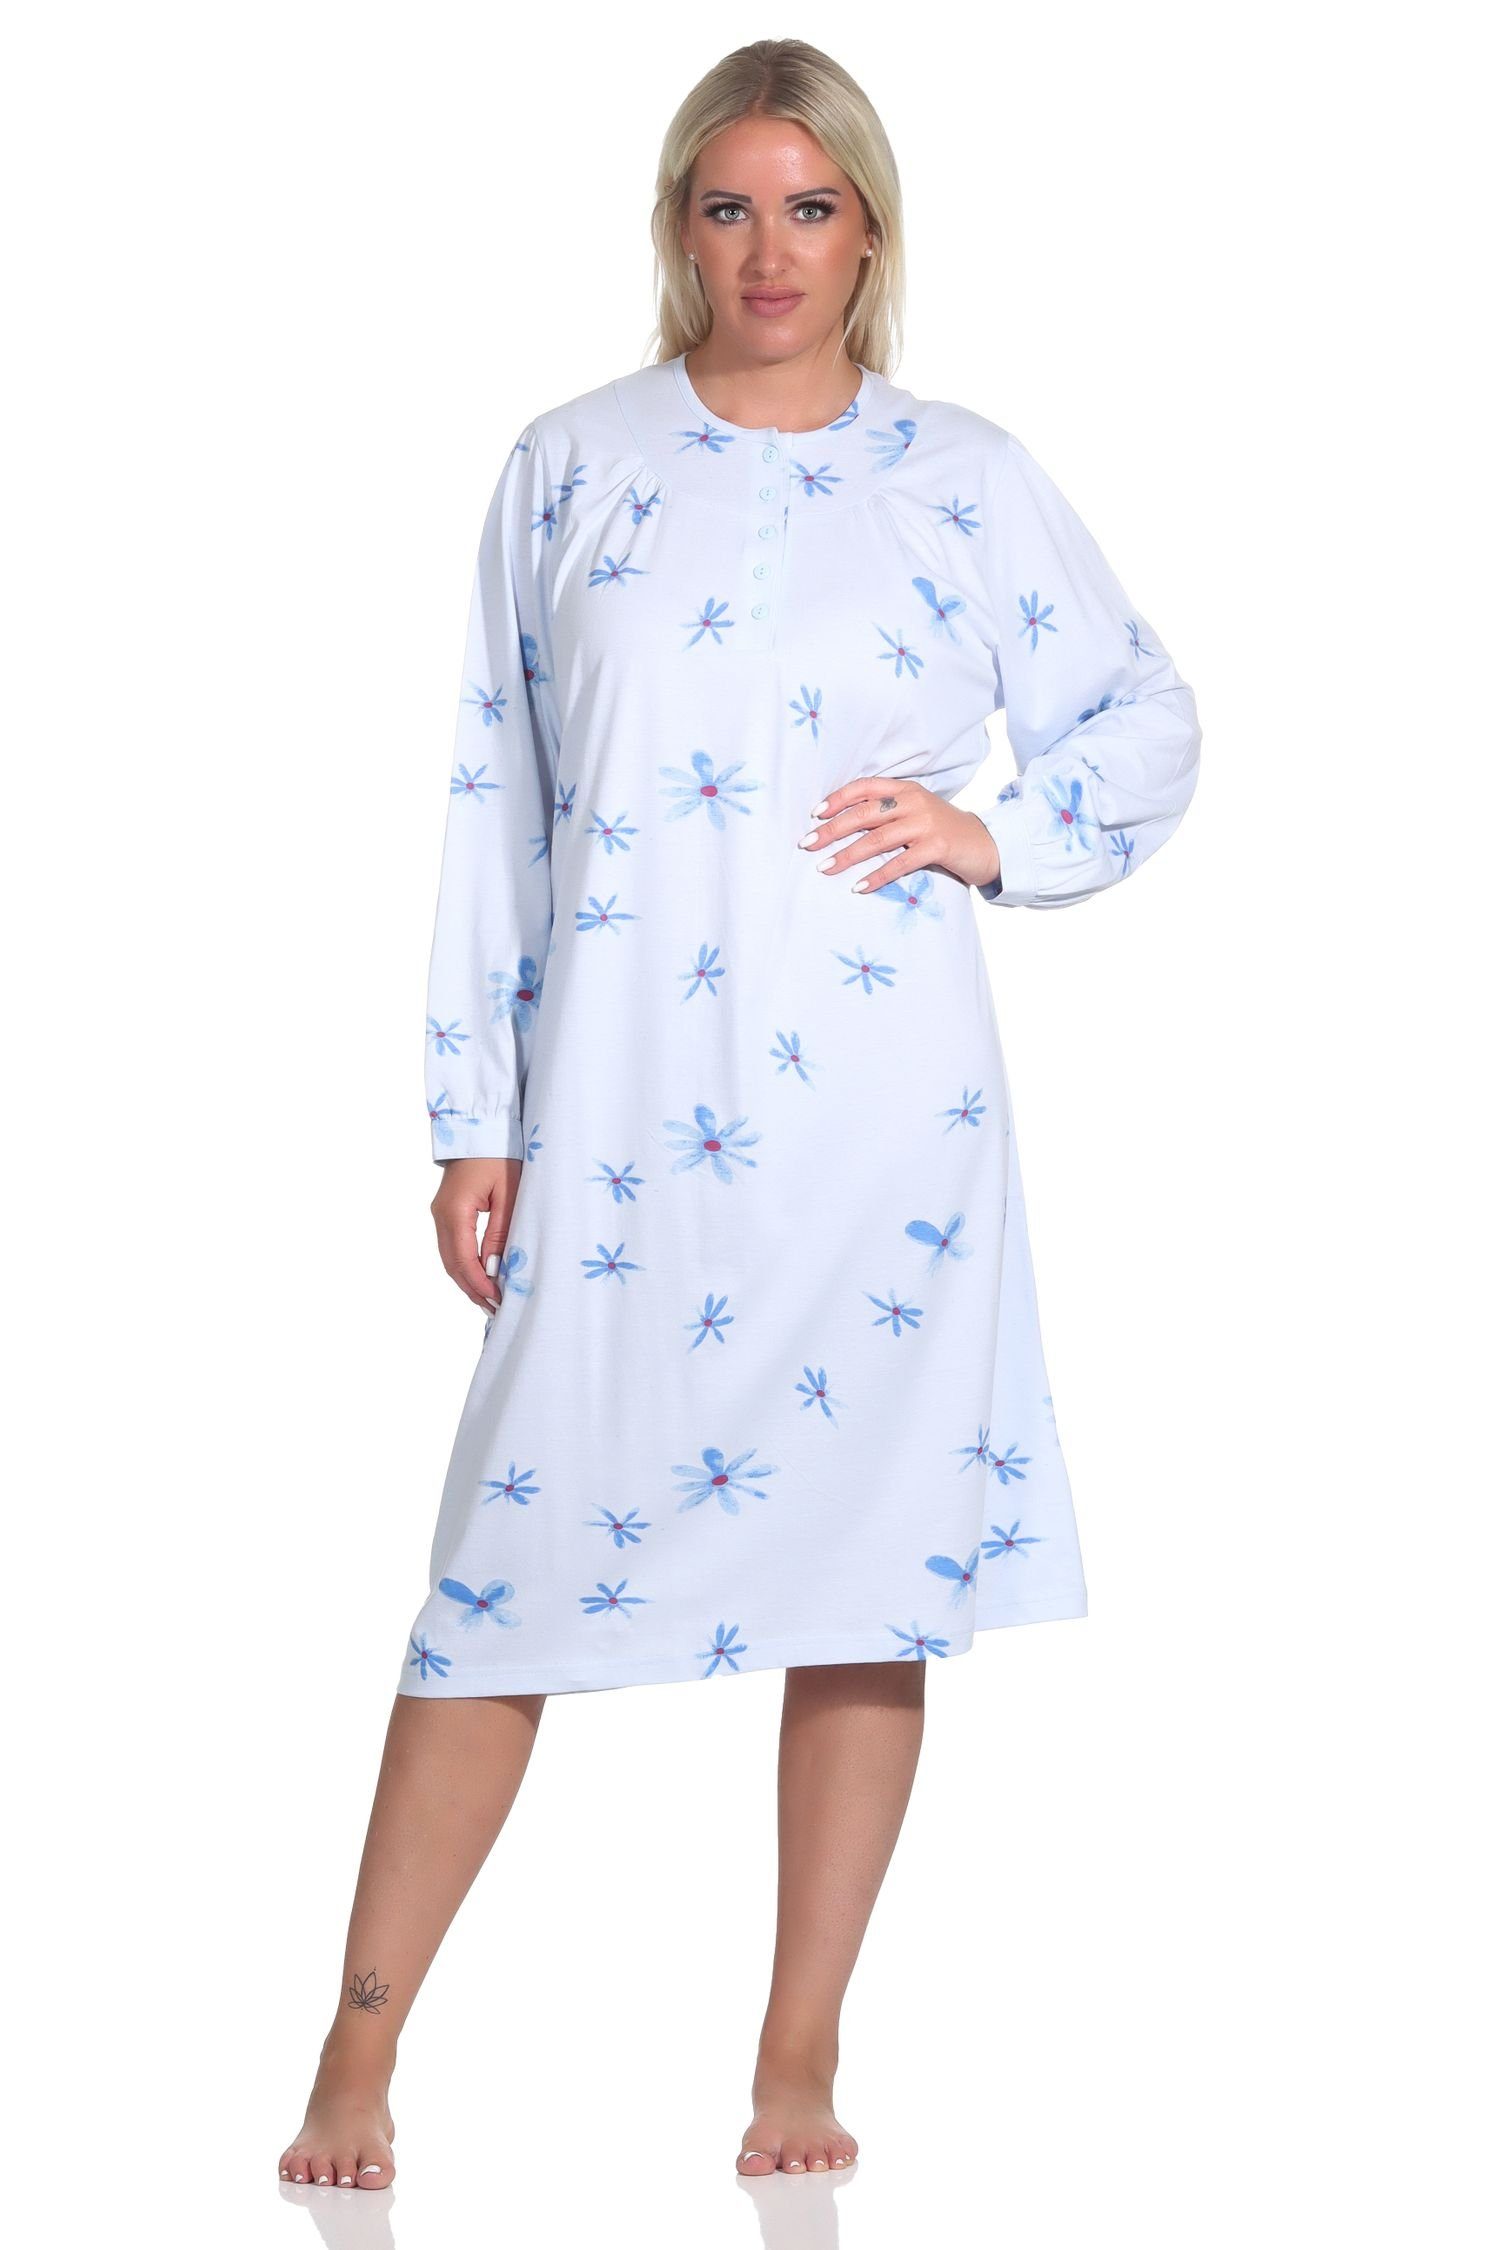 Normann Nachthemd Frauliches Damen Nachthemd langarm mit Knopfleiste am Hals hellblau